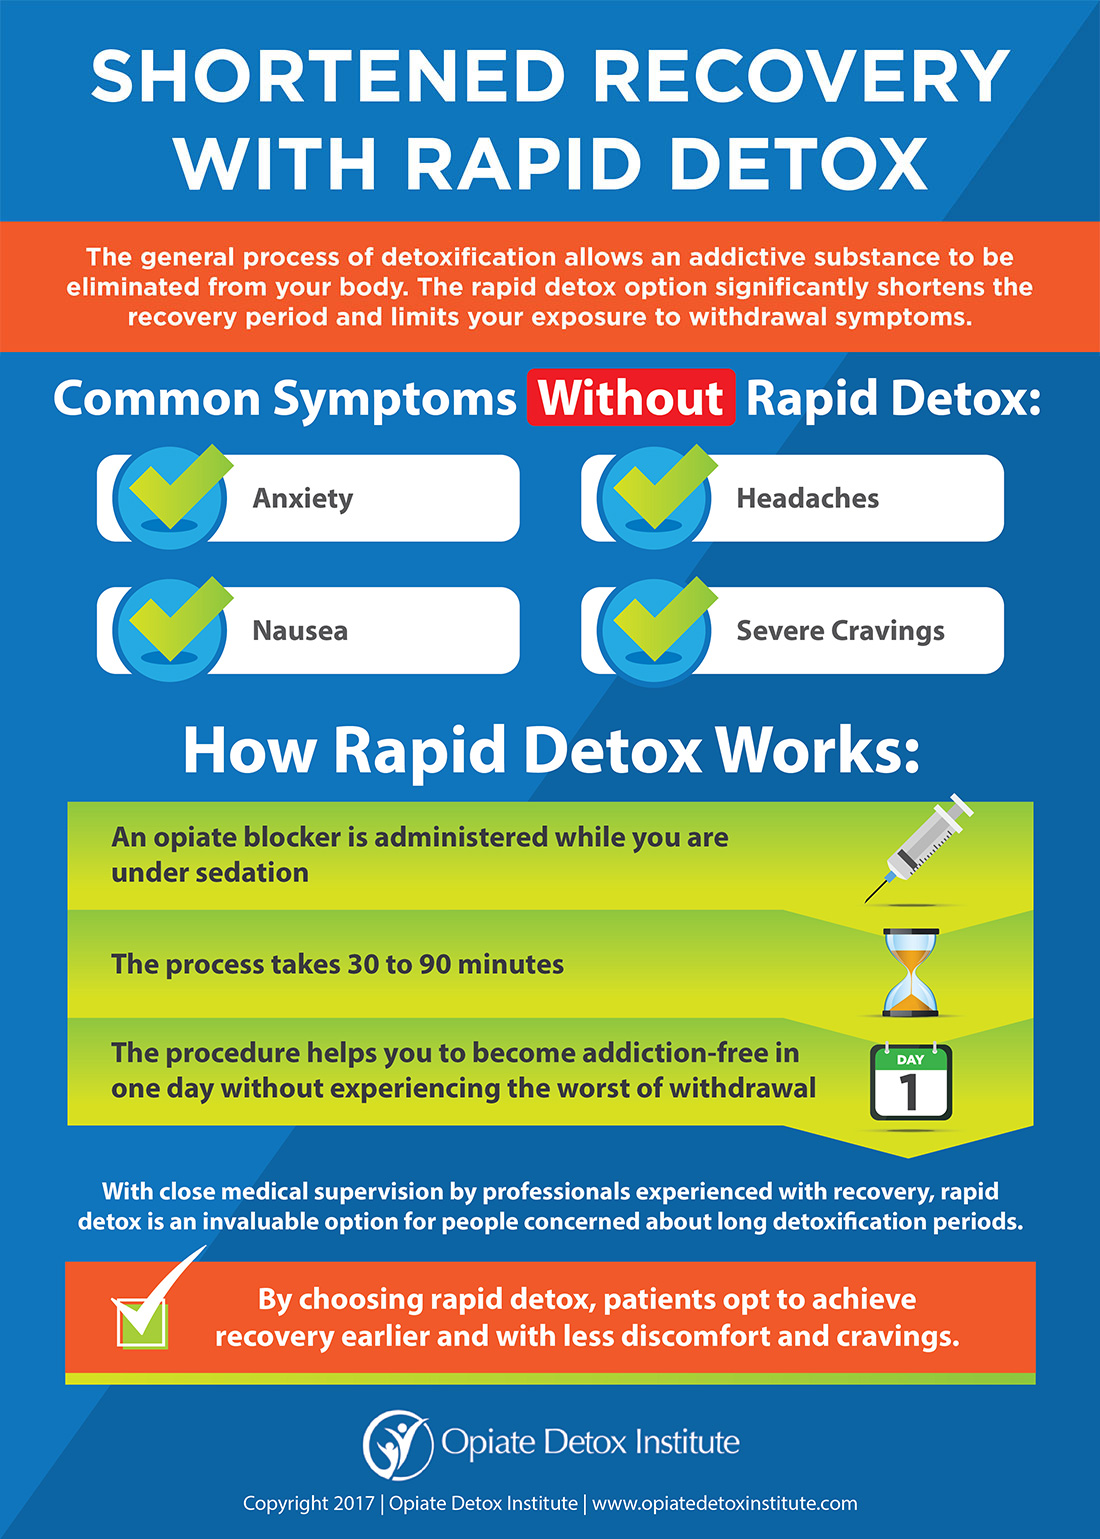 rapid detox procedure)